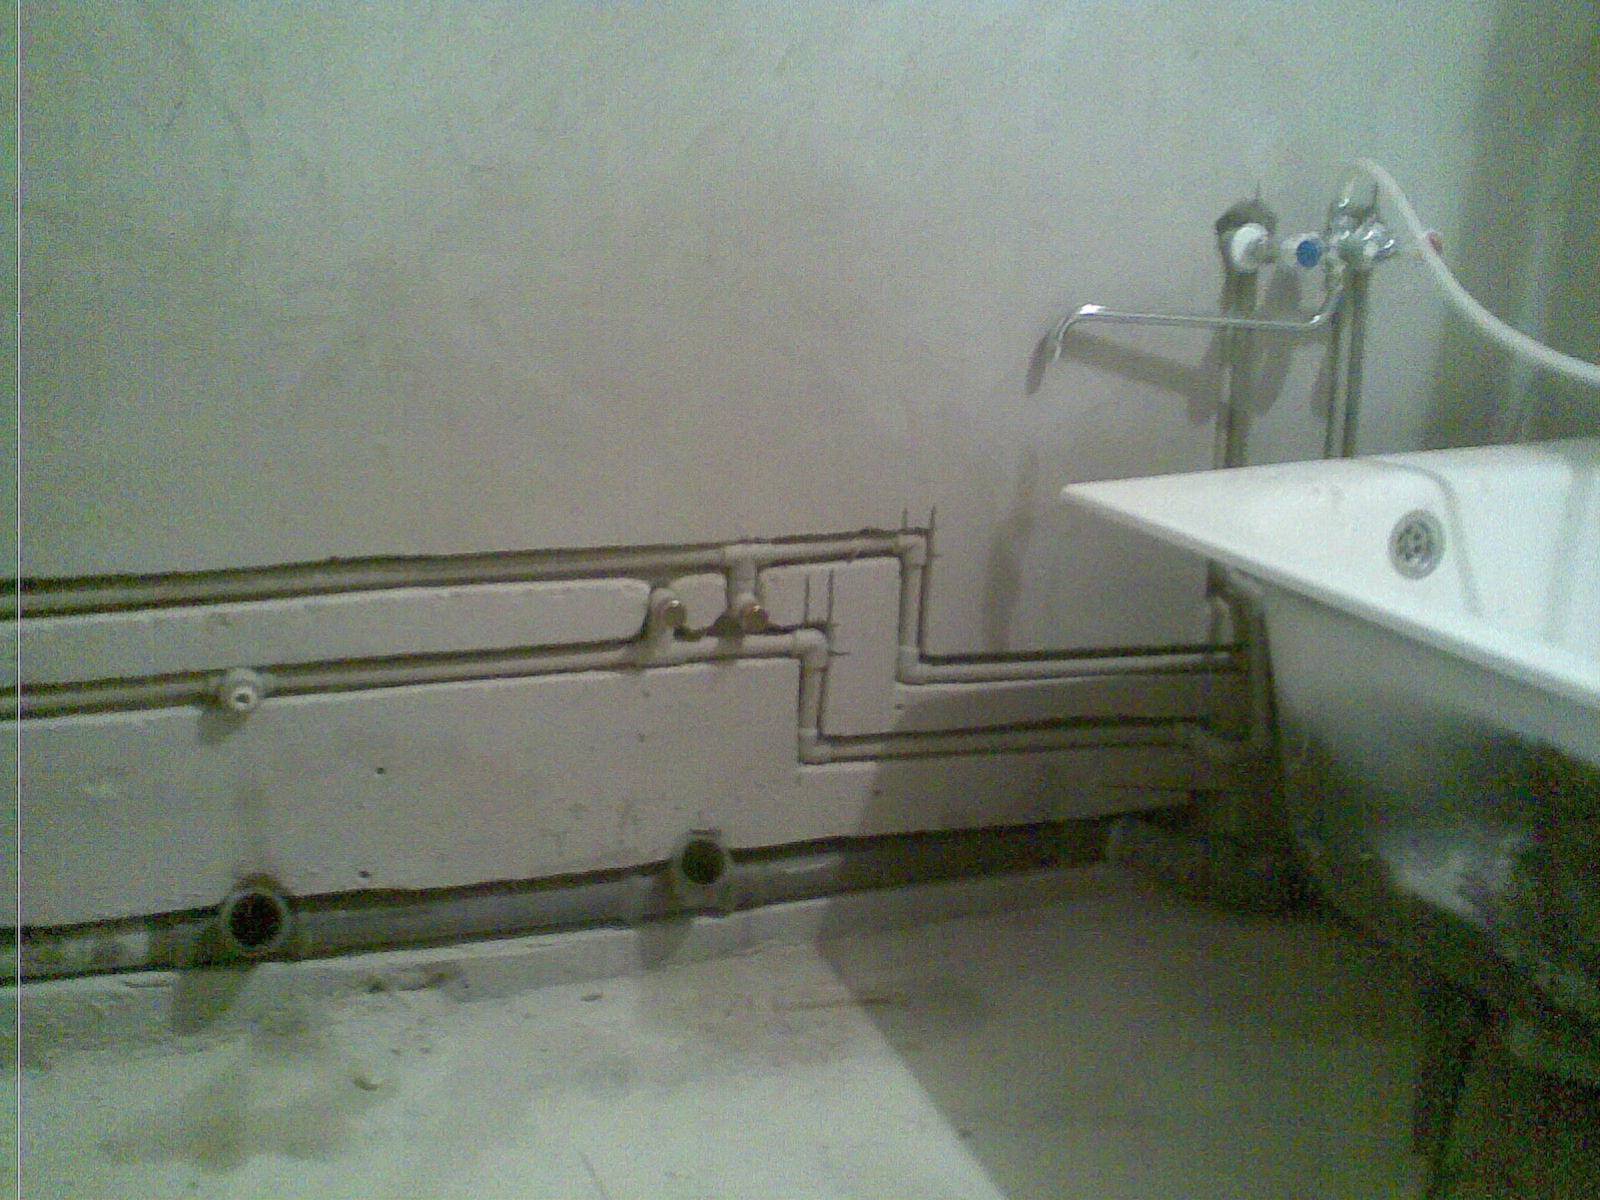 спрятать трубы в ванной в короб